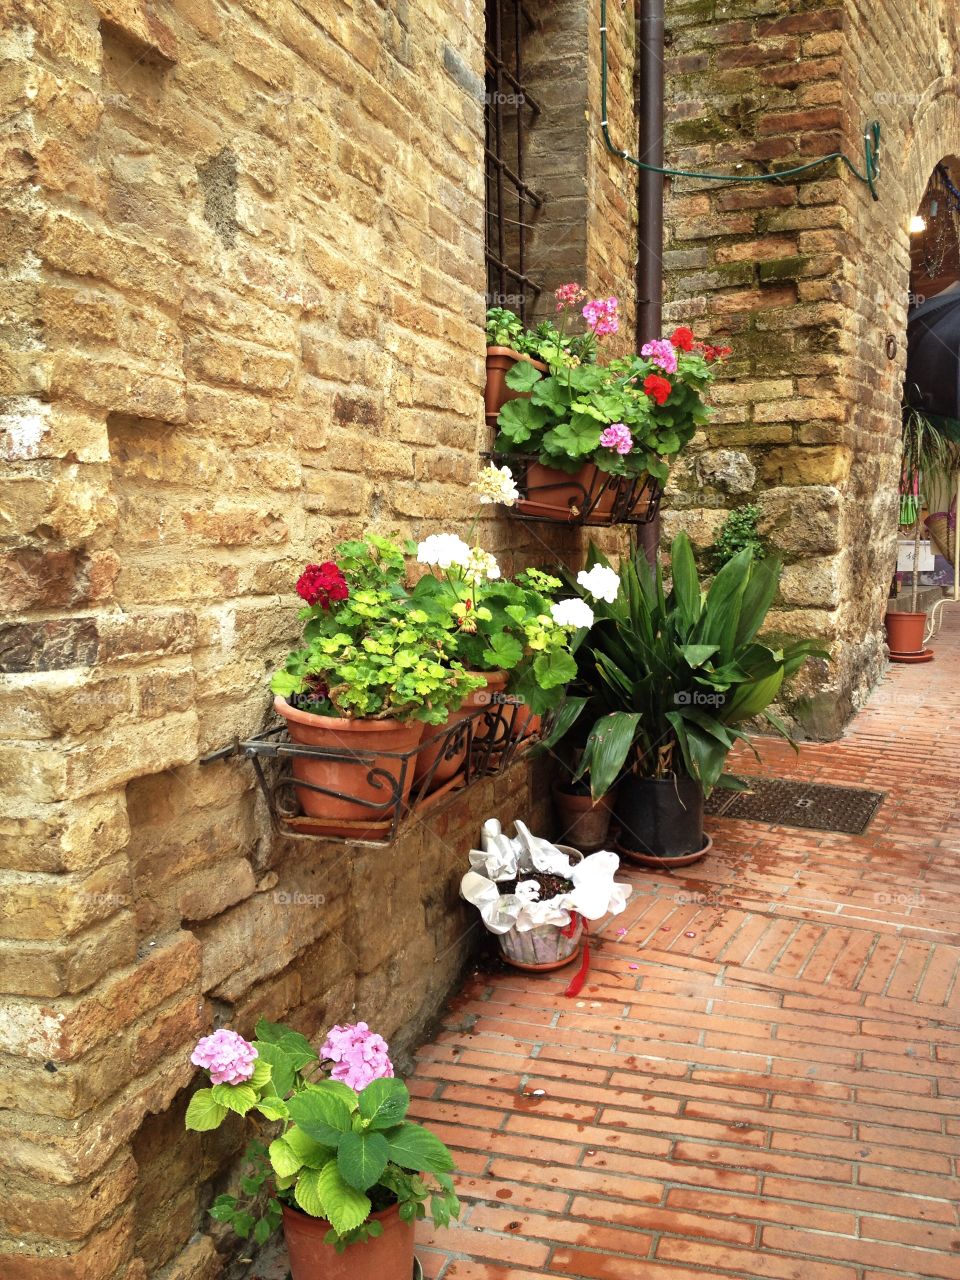 Flower pots in the street